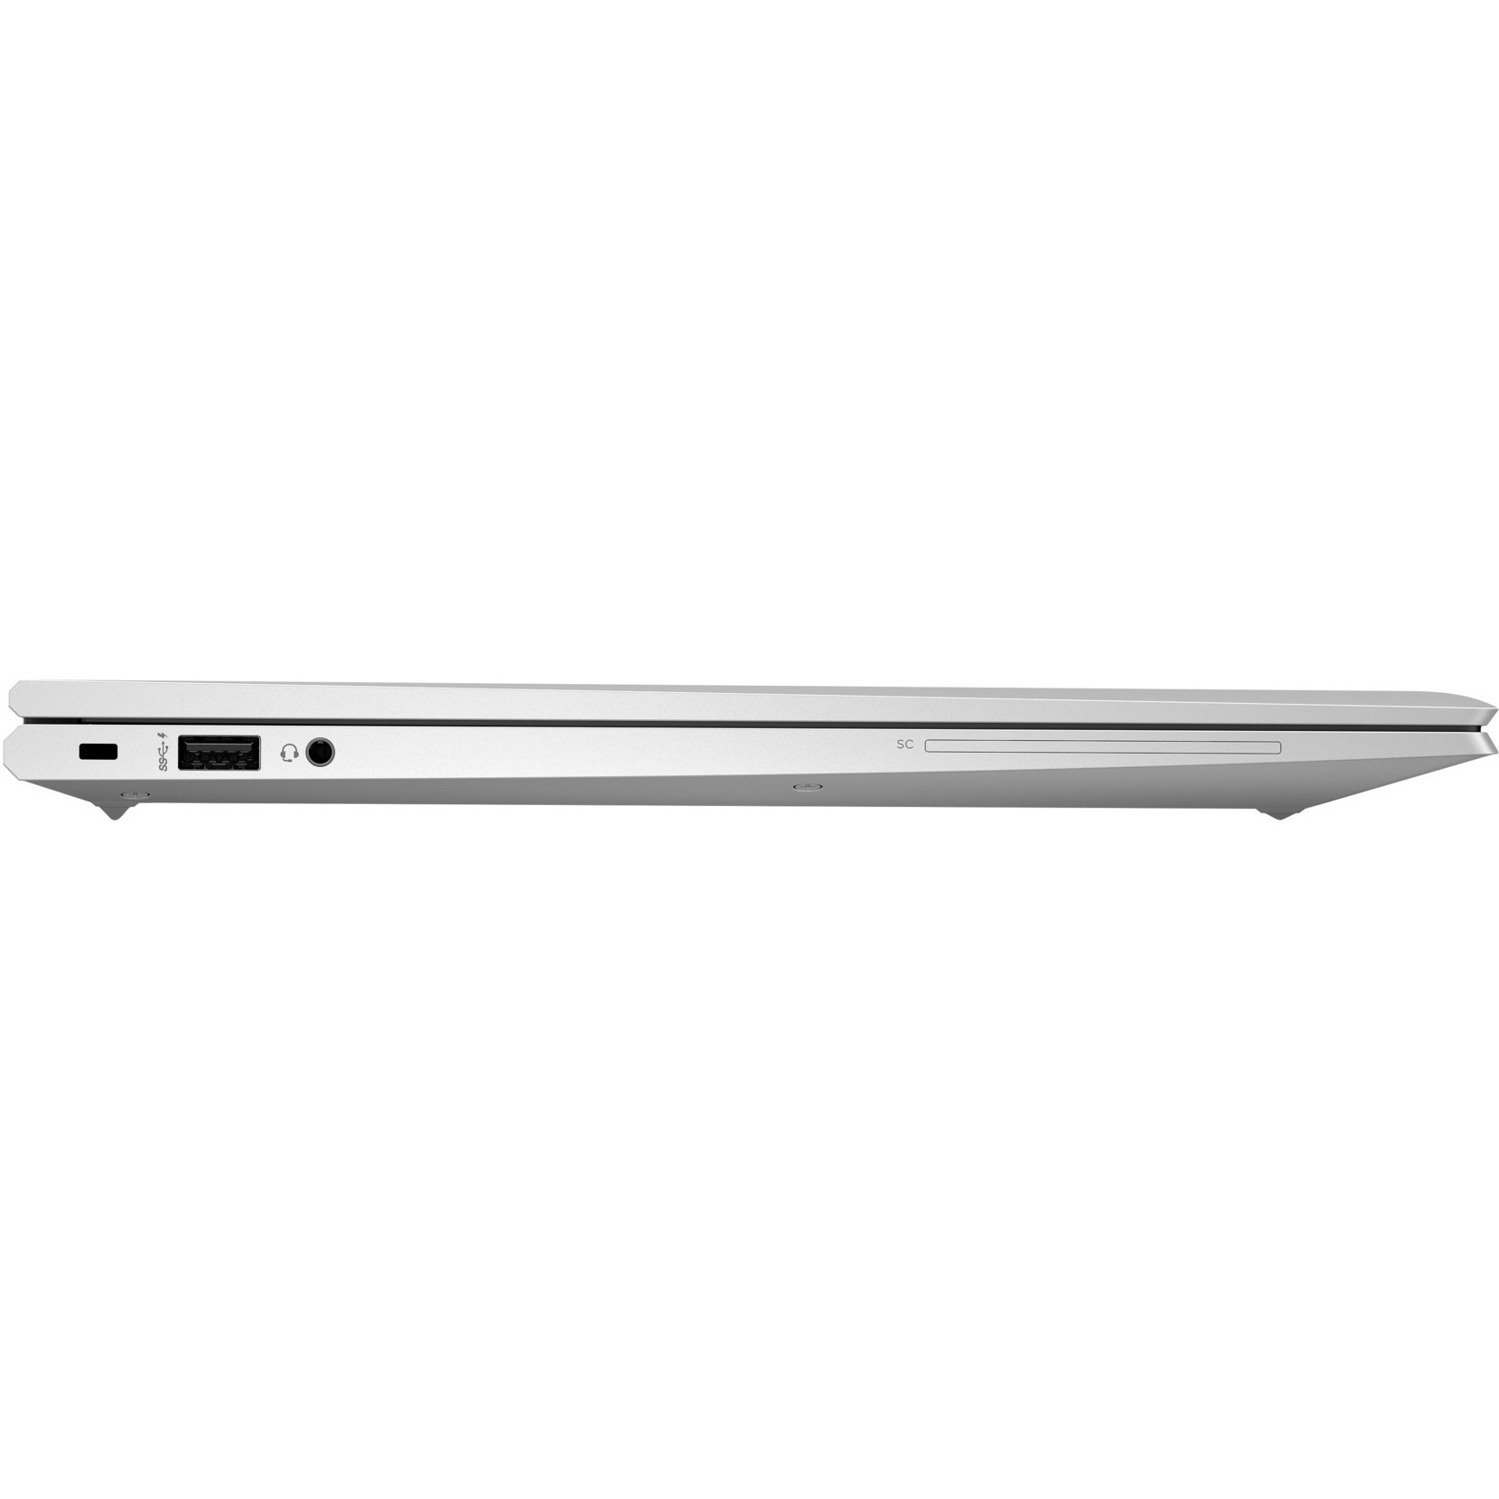 HP EliteBook 855 G8 15.6" Notebook - Full HD - AMD Ryzen 5 PRO 3rd Gen 5650U - 16 GB - 512 GB SSD